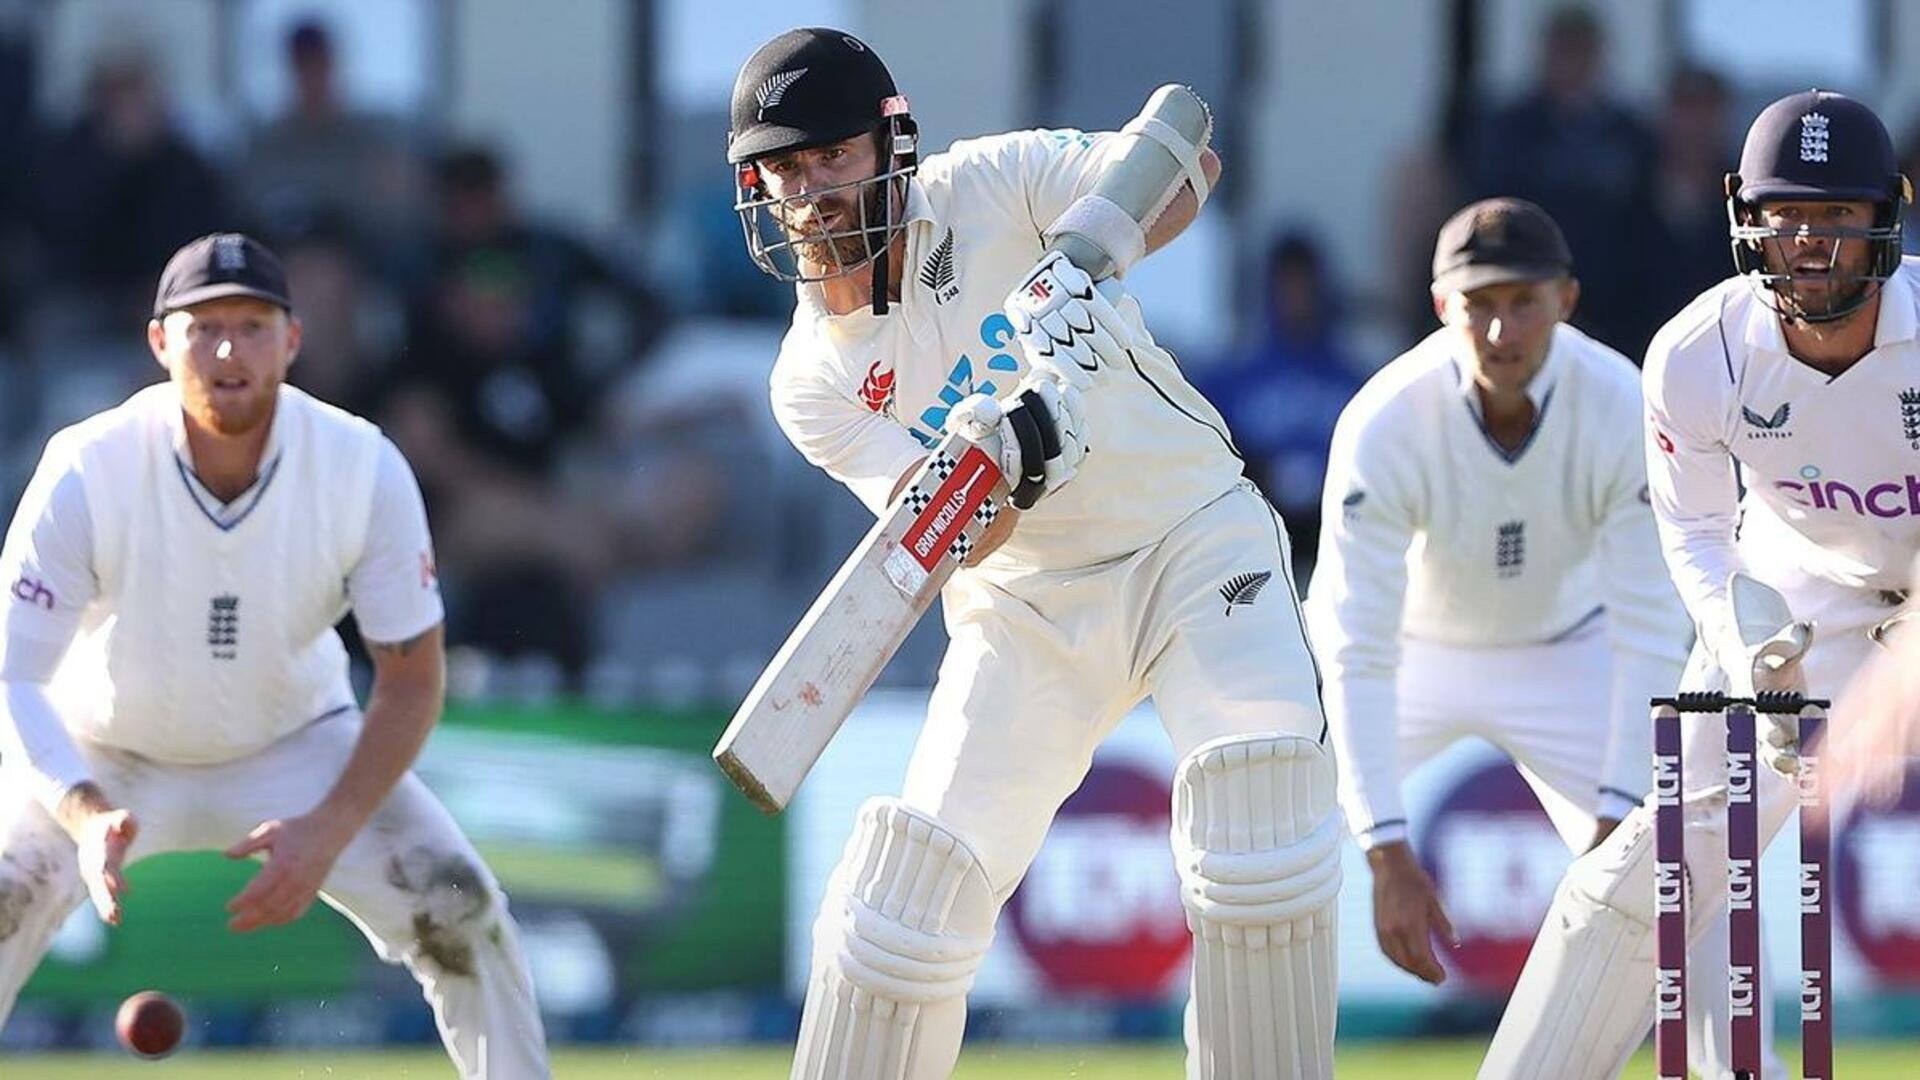 न्यूजीलैंड के सर्वाधिक टेस्ट रन बनाने वाले बल्लेबाज बने केन विलियमसन, बोले- यह सम्मान की बात